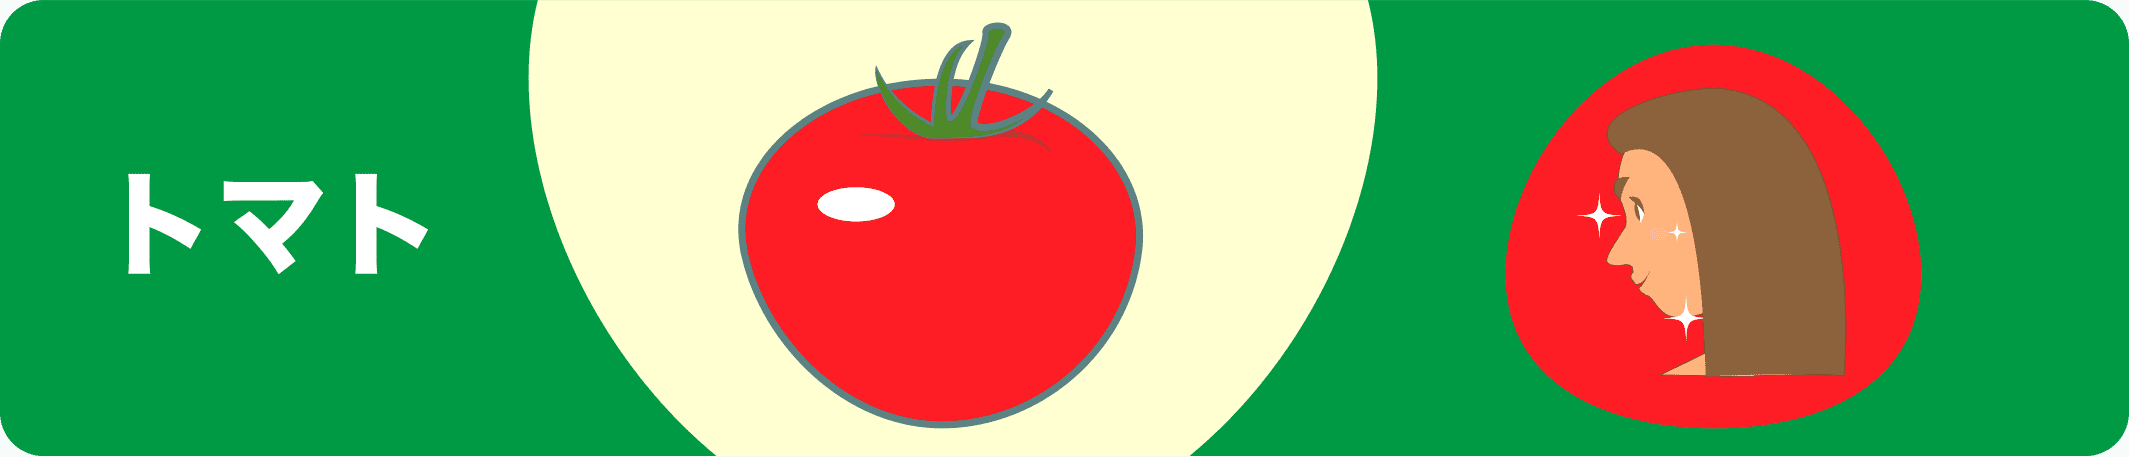 トマト 4コマ漫画つきのイラスト